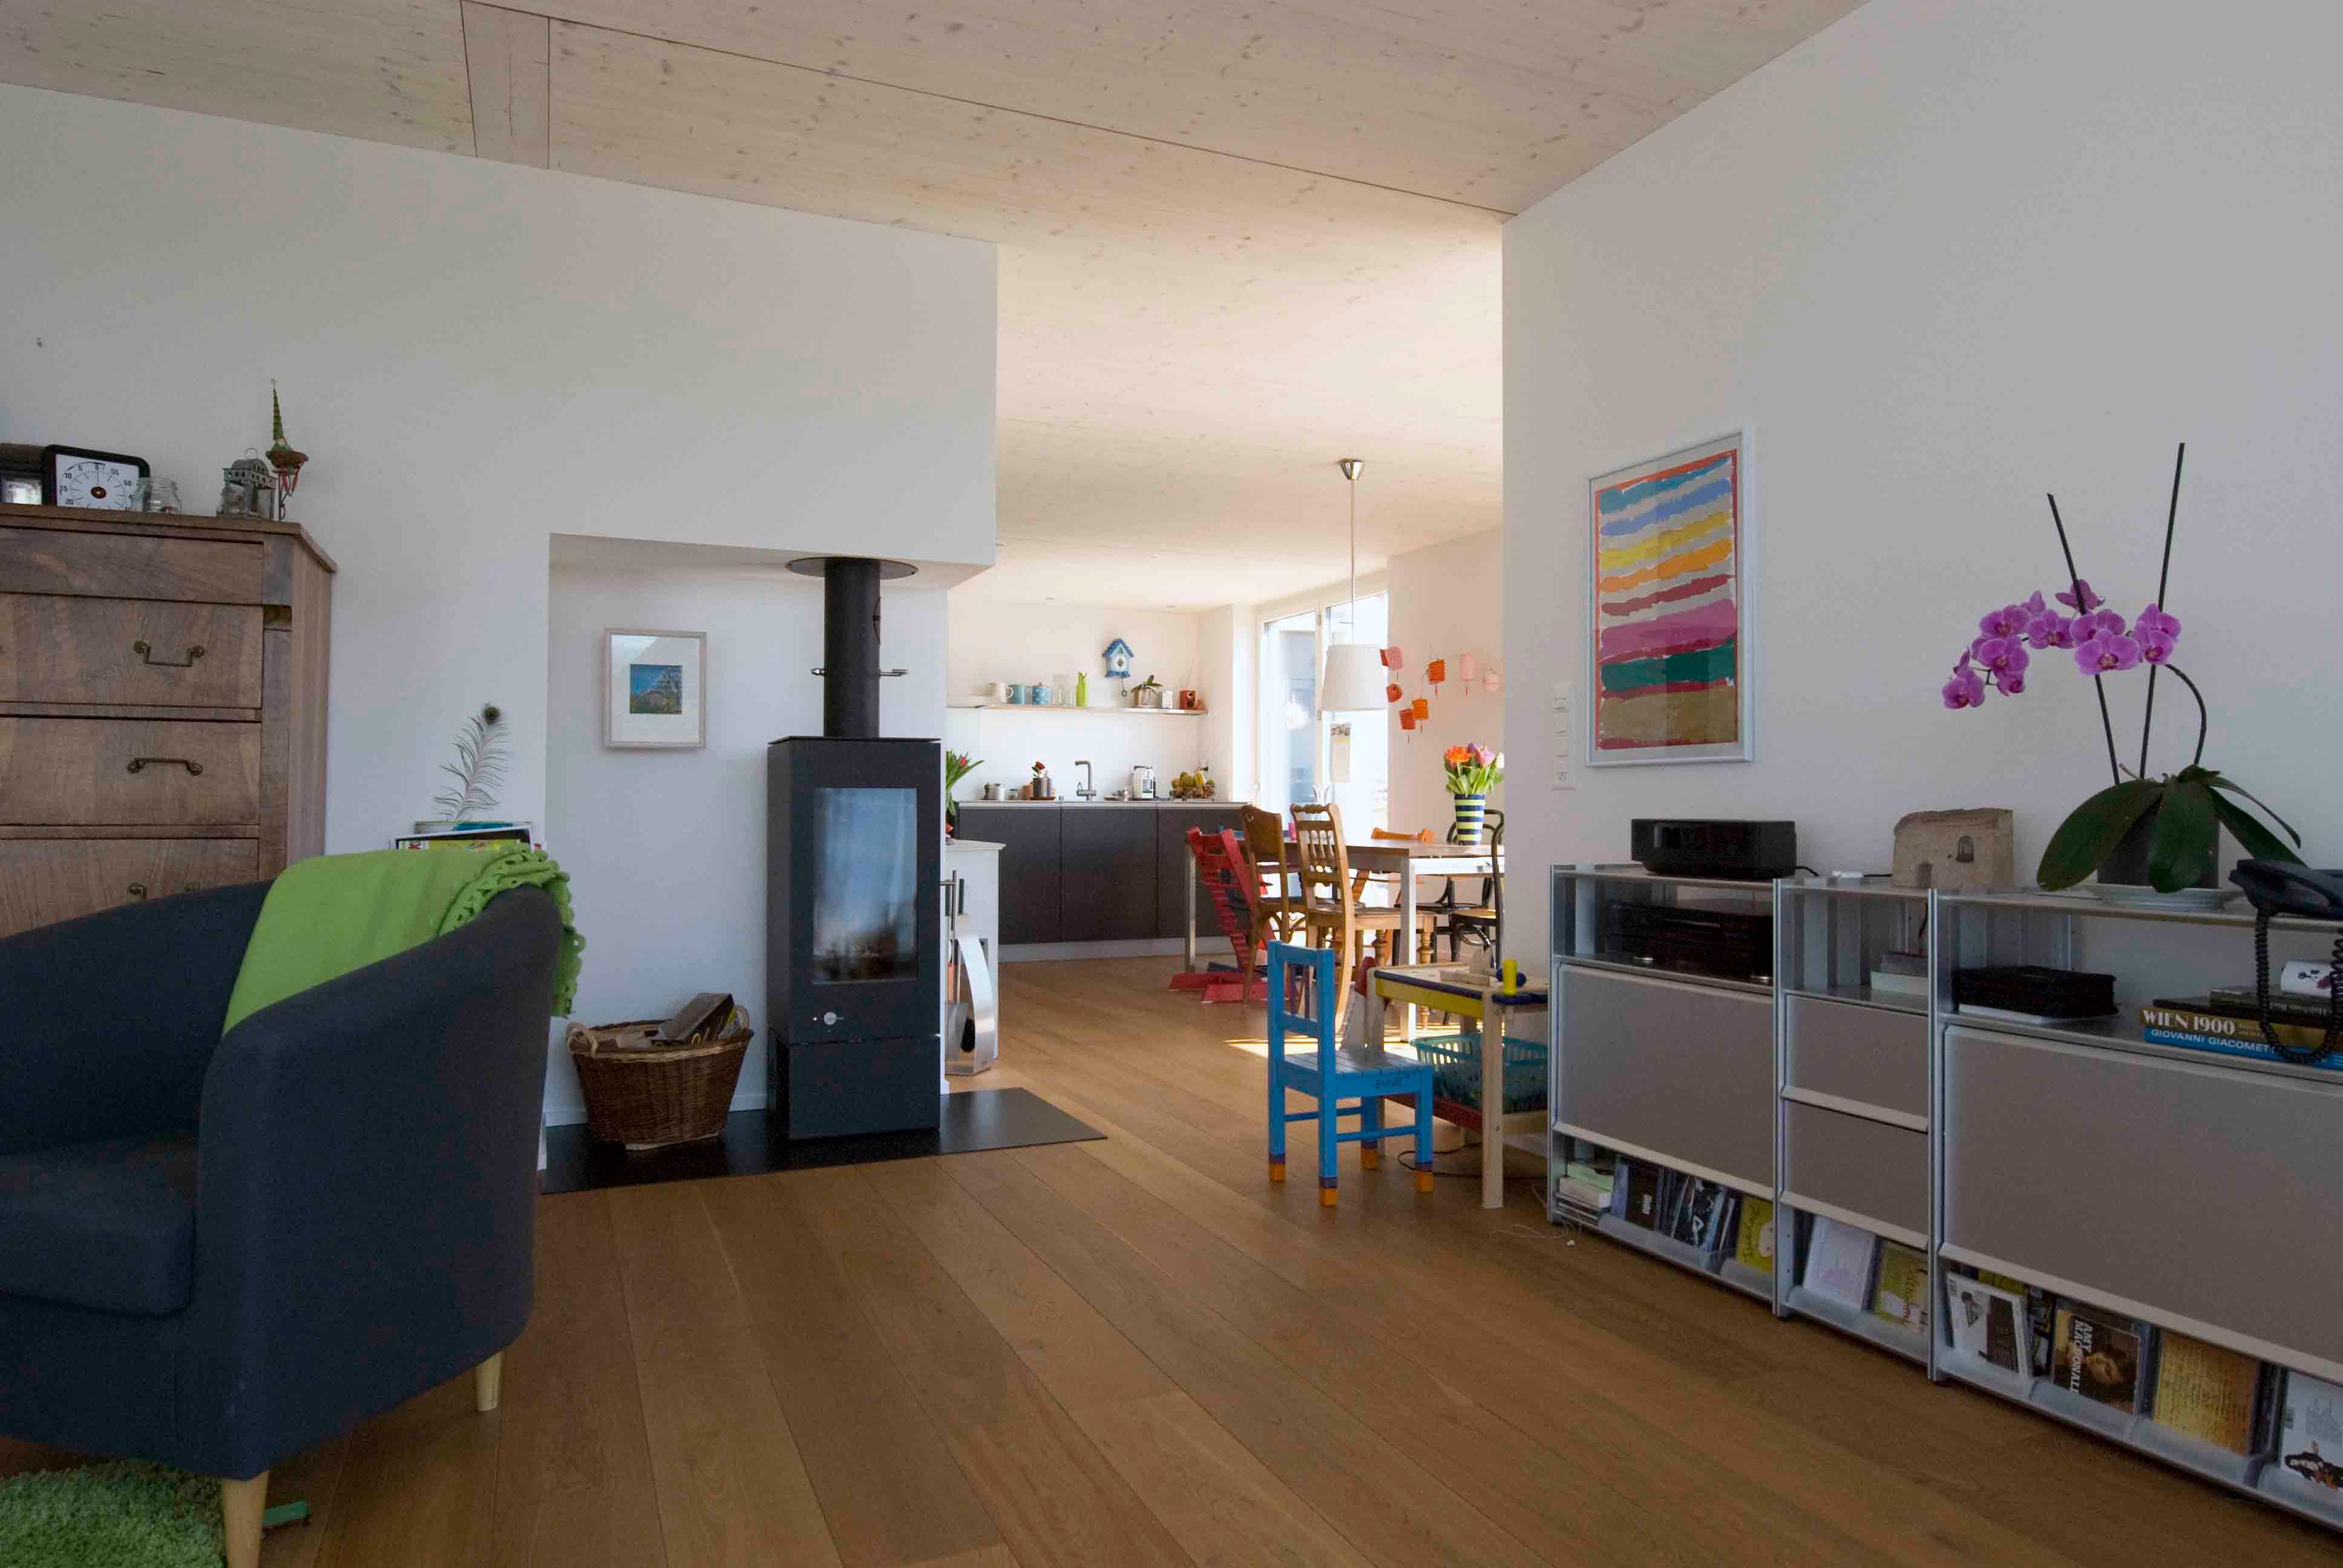  Architektur-Reportage Ersigen liebevolle Details: Wohnbereich mit Cheminée und Kinderspielecke 